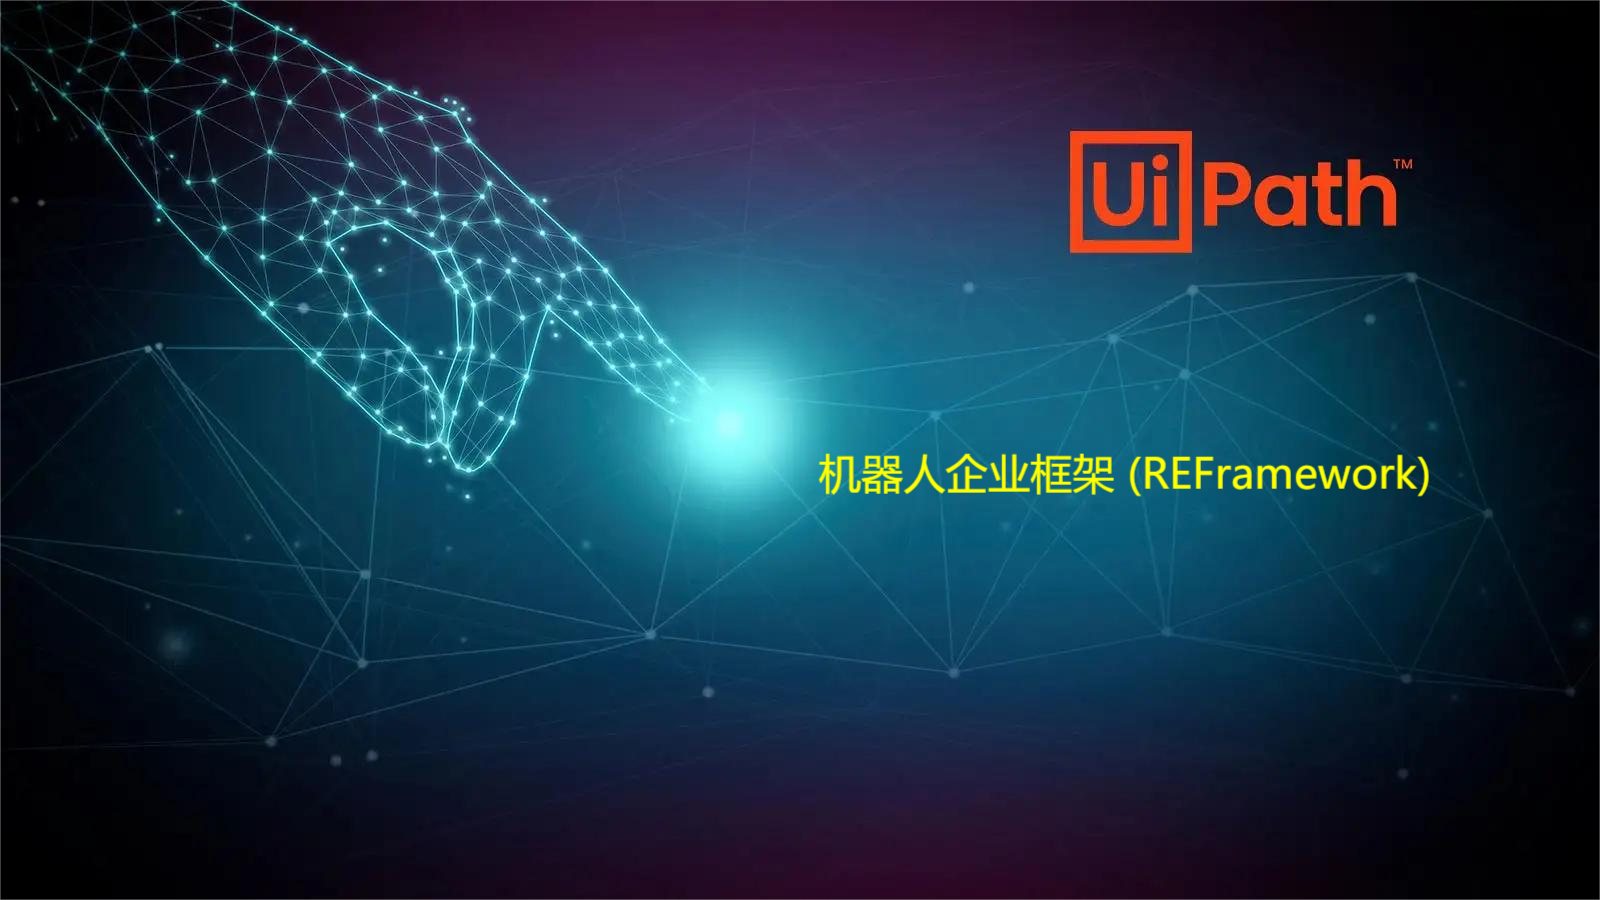 【前沿技术RPA】 一文了解UiPath 机器人企业框架 (REFramework)